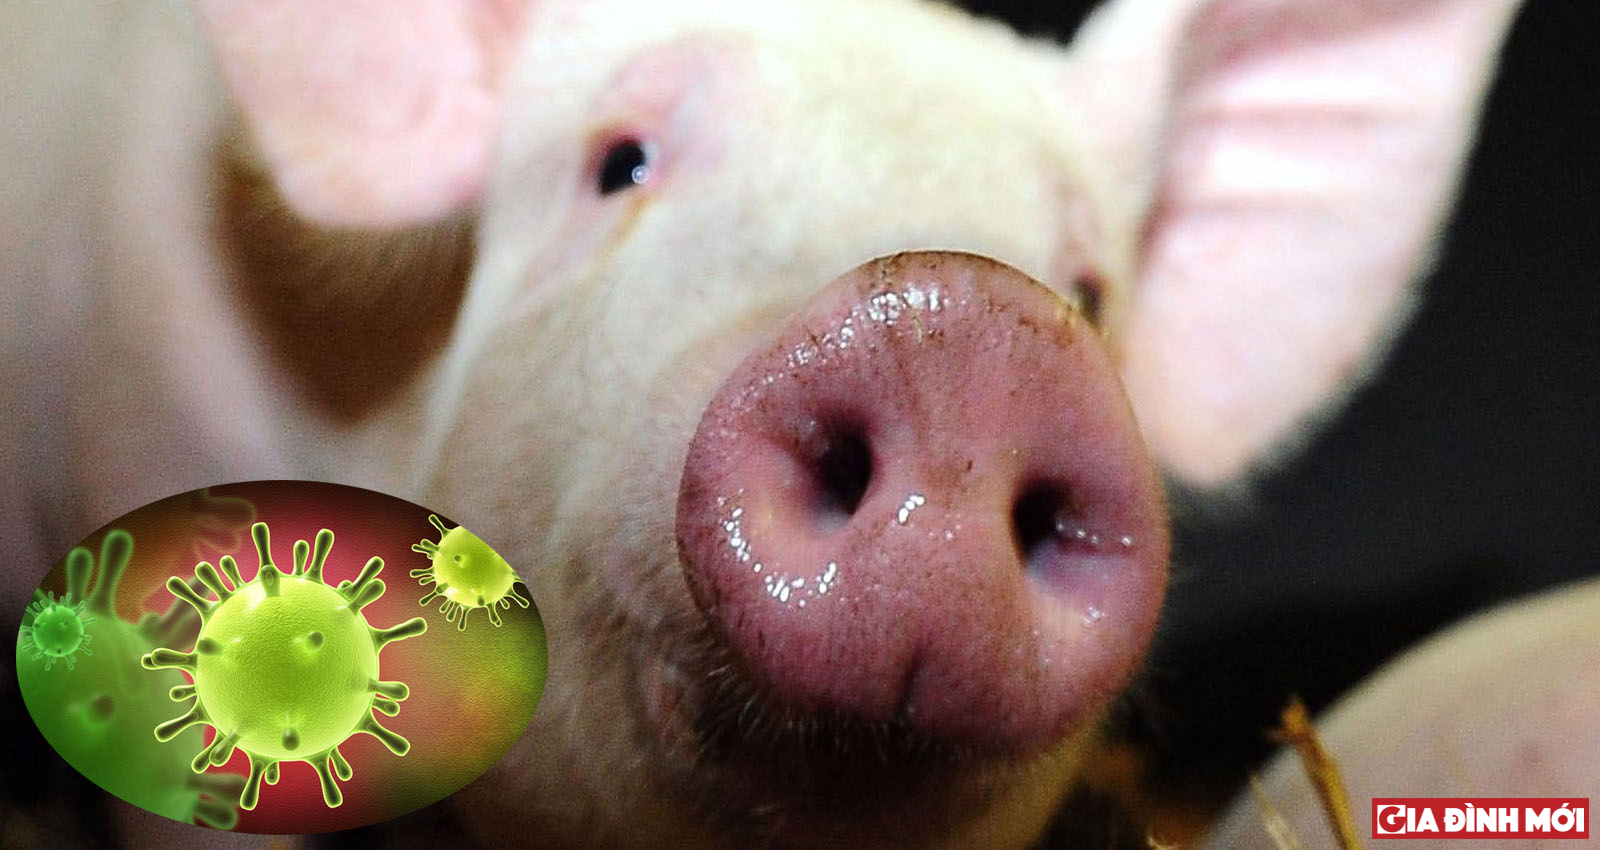 Một loại virus mới biến đổi ở lợn làm dấy lên lo ngại bùng phát dịch SARS